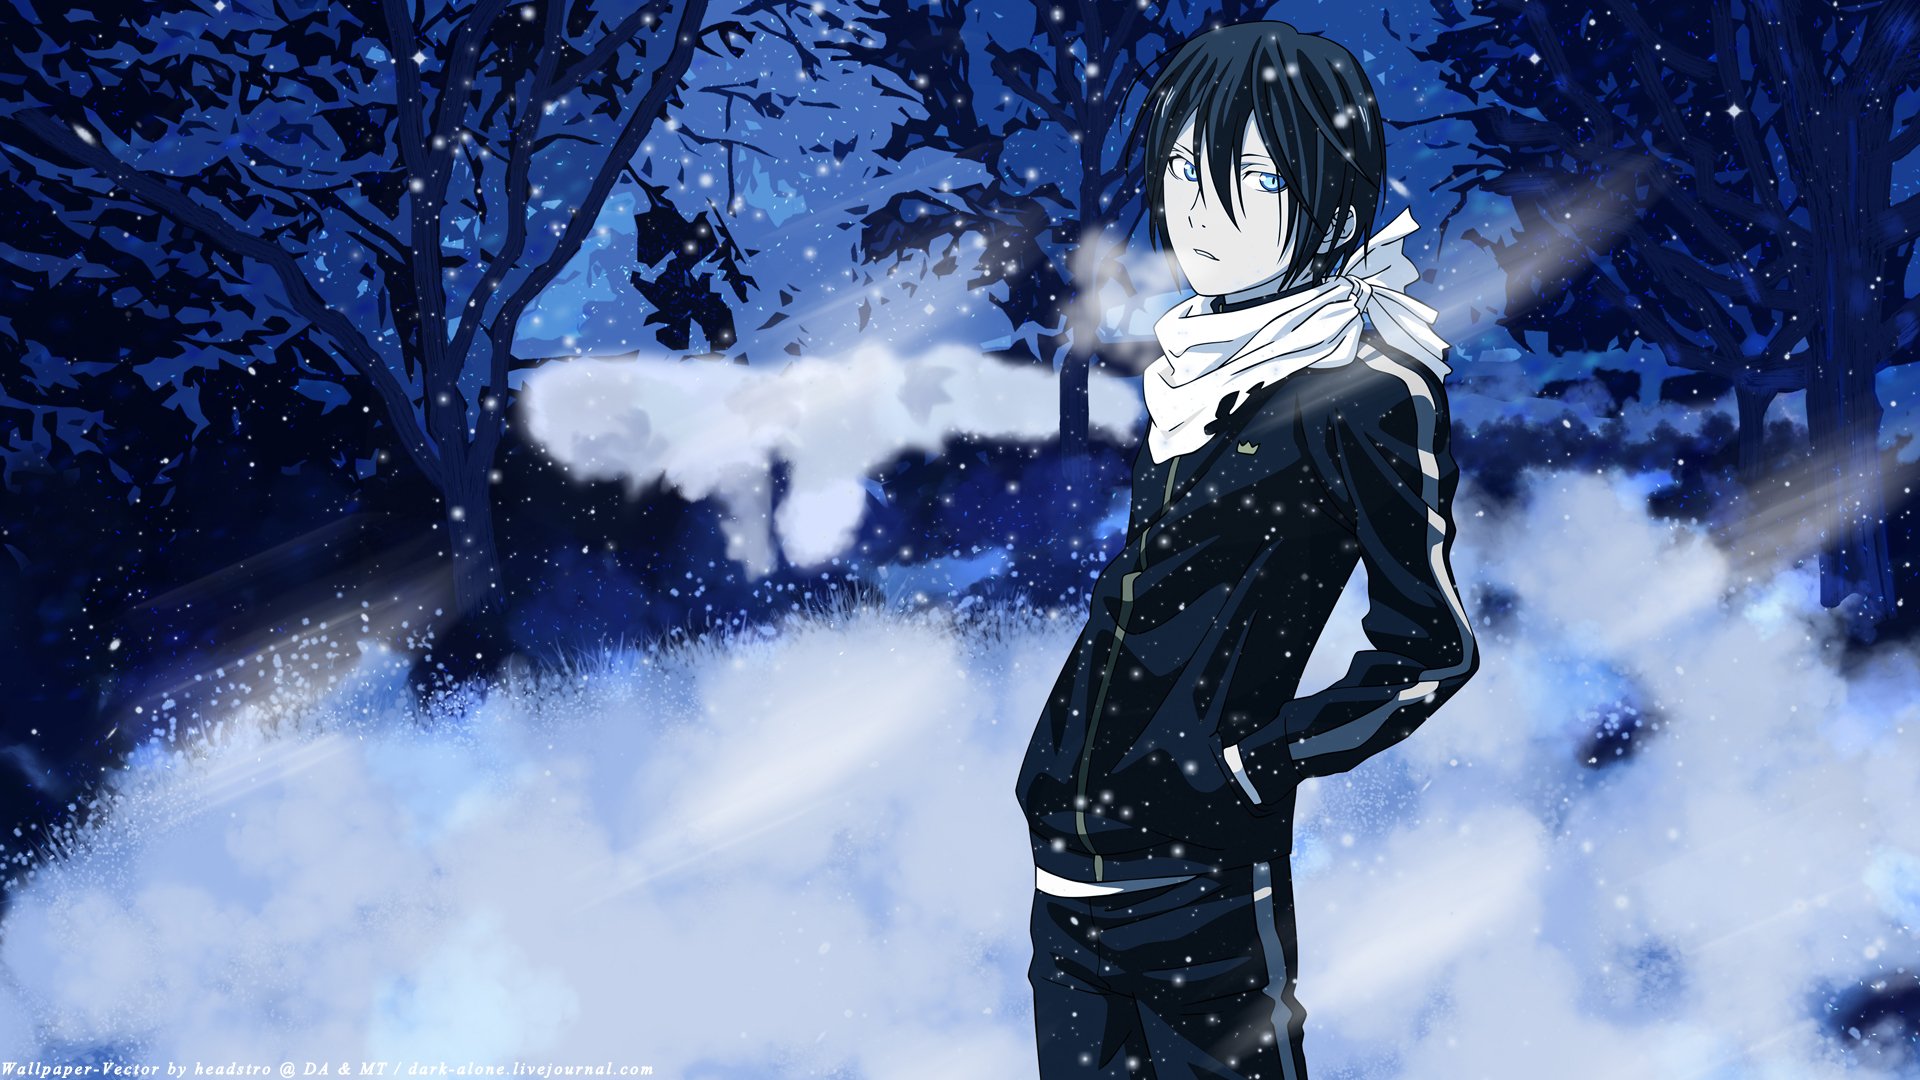 papel pintado noragami,nieve,anime,invierno,cielo,cabello negro